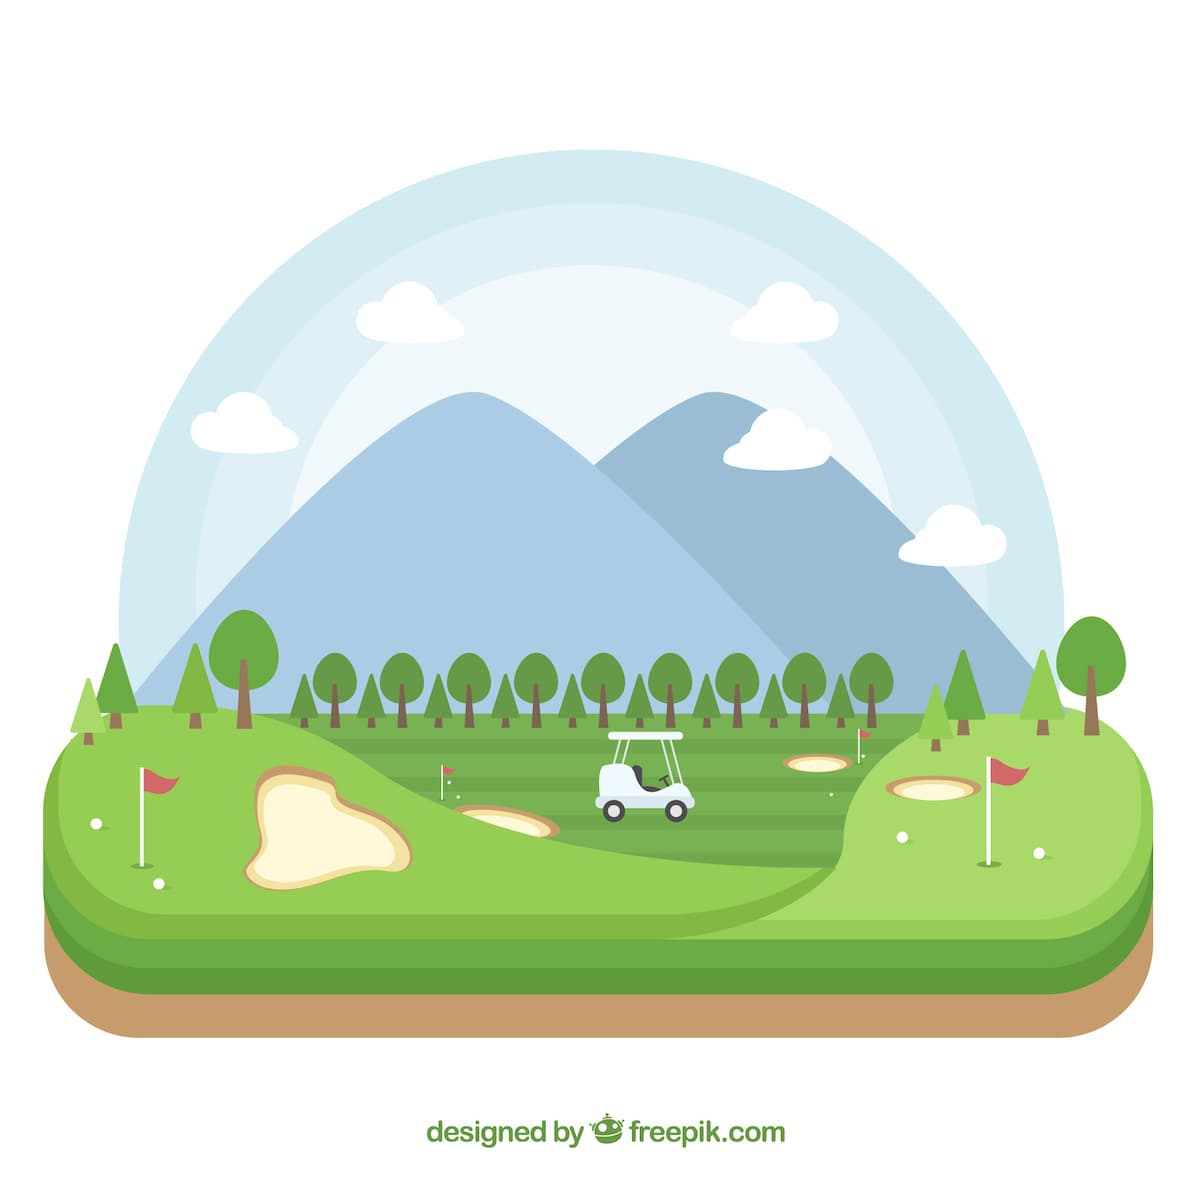 Gestión Sostenible del Agua en Campos de Golf Gestión Sostenible del Agua en Campos de Golf